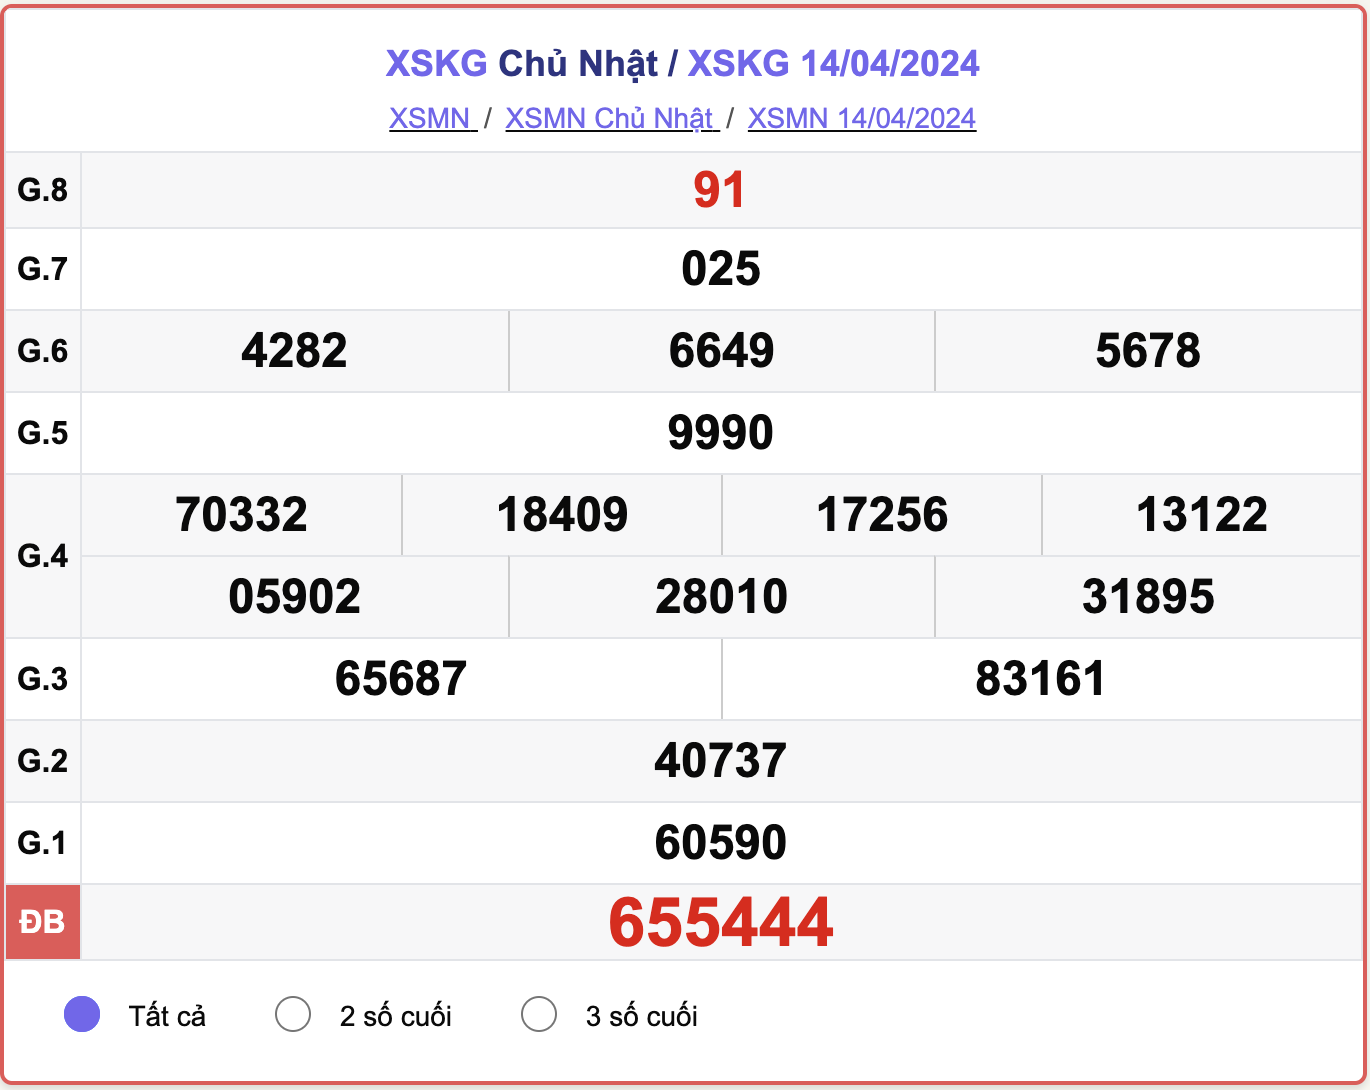 XSKG Chủ nhật, kết quả xổ số Kiên Giang ngày 14/4/2024.